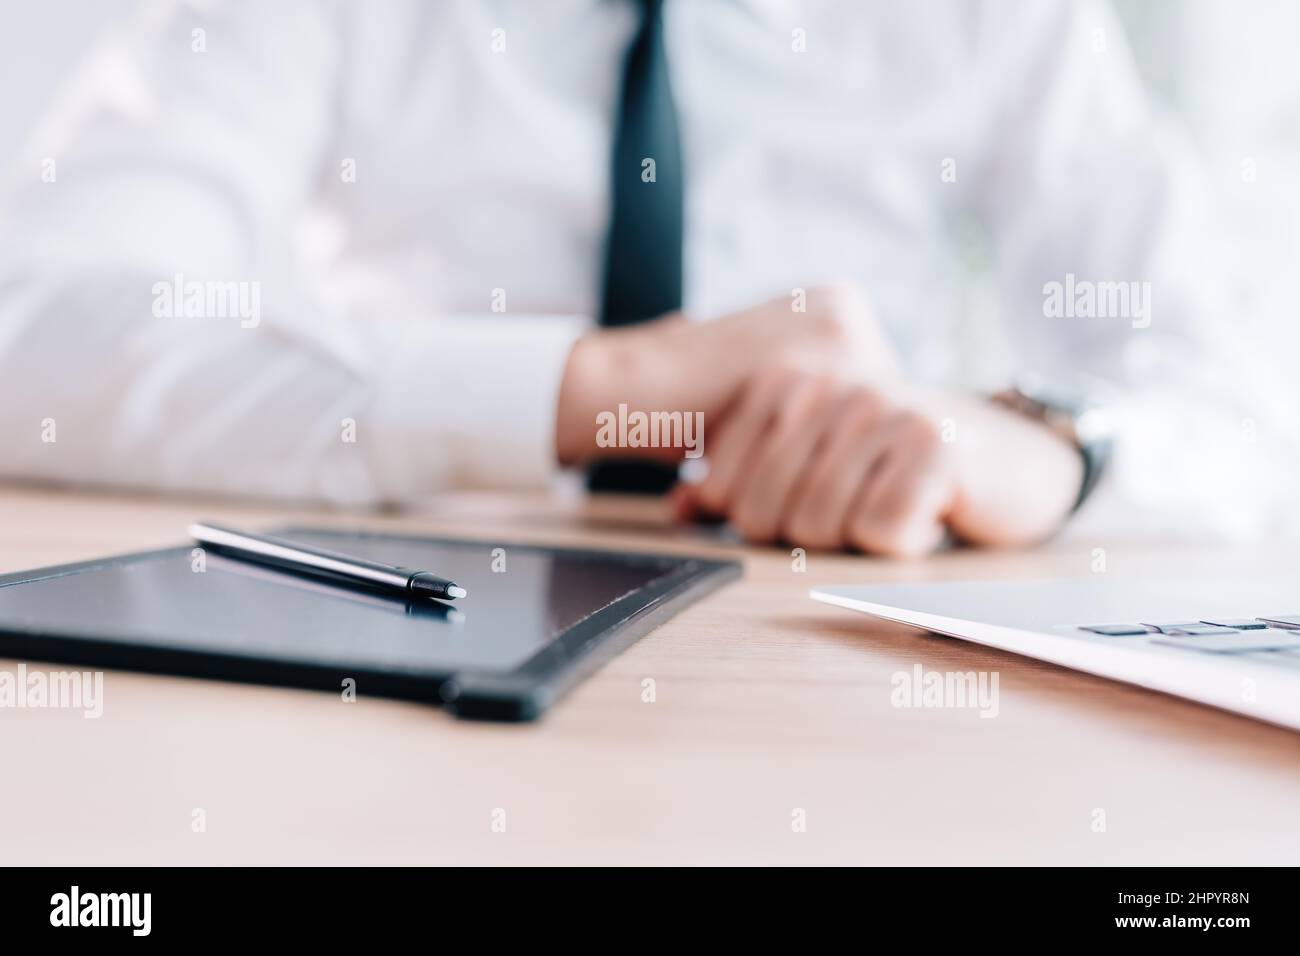 Stilo e pad e-Signature sulla scrivania dell'ufficio, mani di un uomo d'affari in background, fuoco selettivo Foto Stock